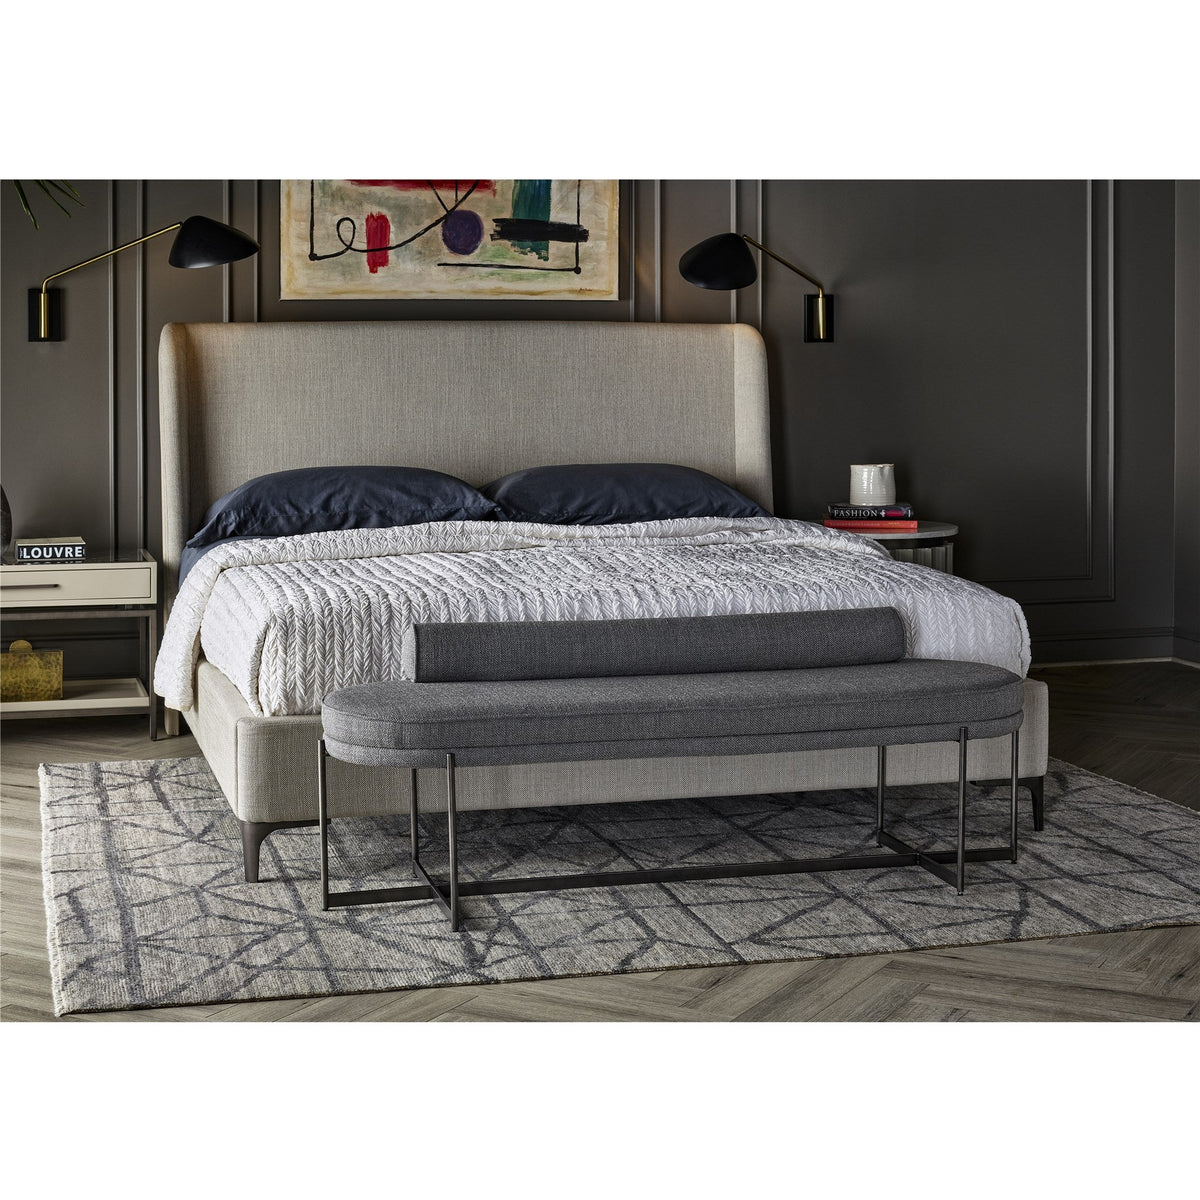 Jasper Bed - Be Bold Furniture